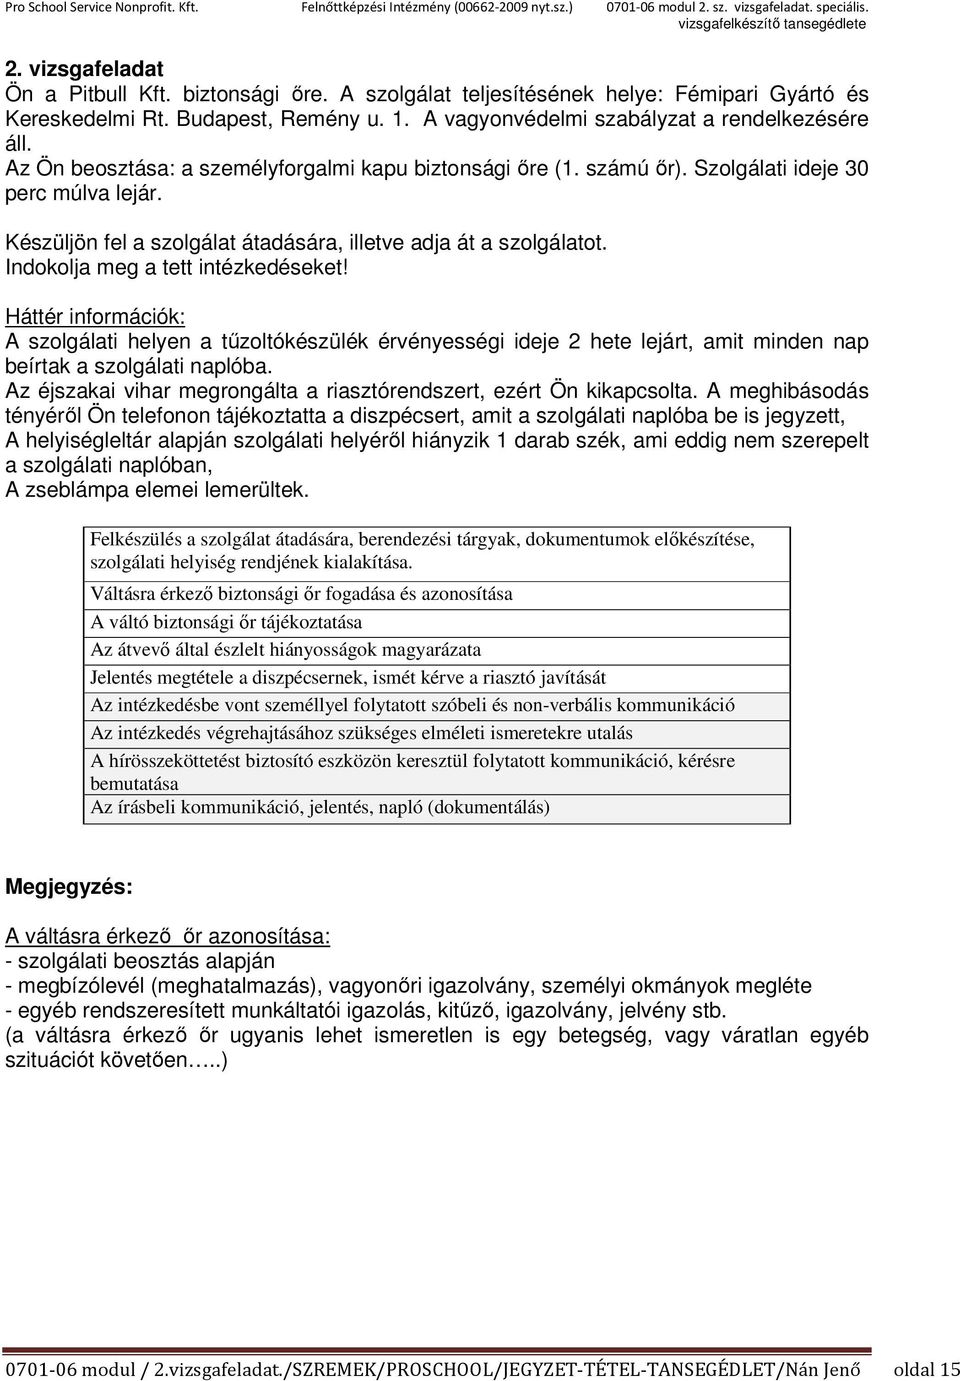 Biztonsági Őr OKJ szakképzés és vizsga - PDF Ingyenes letöltés